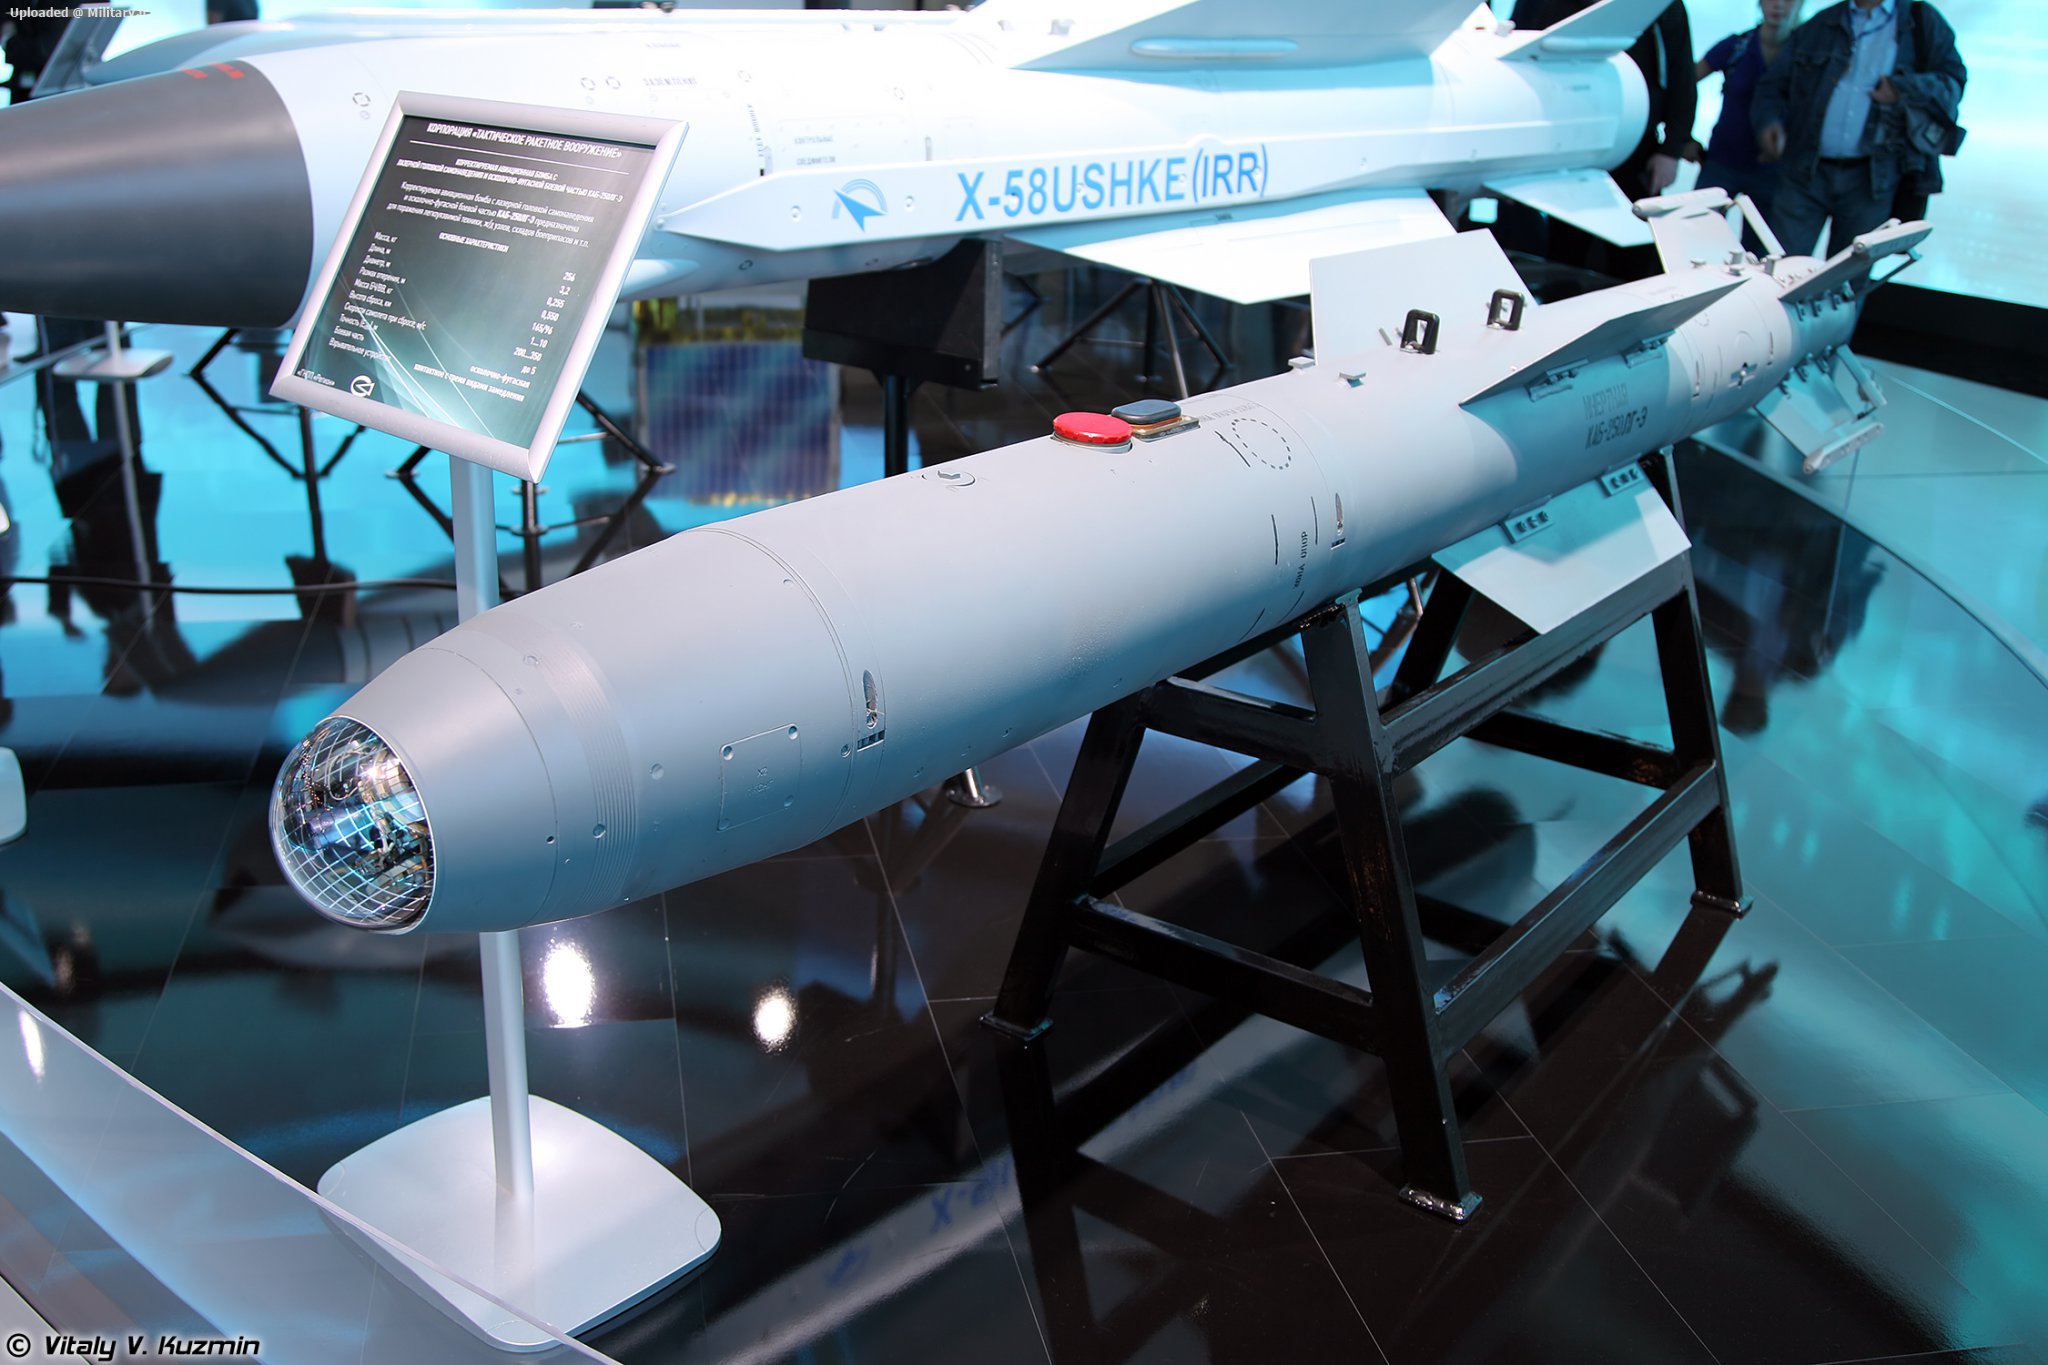 KAB-250LG-E_guided_bomb_at_MAKS-2015_01.